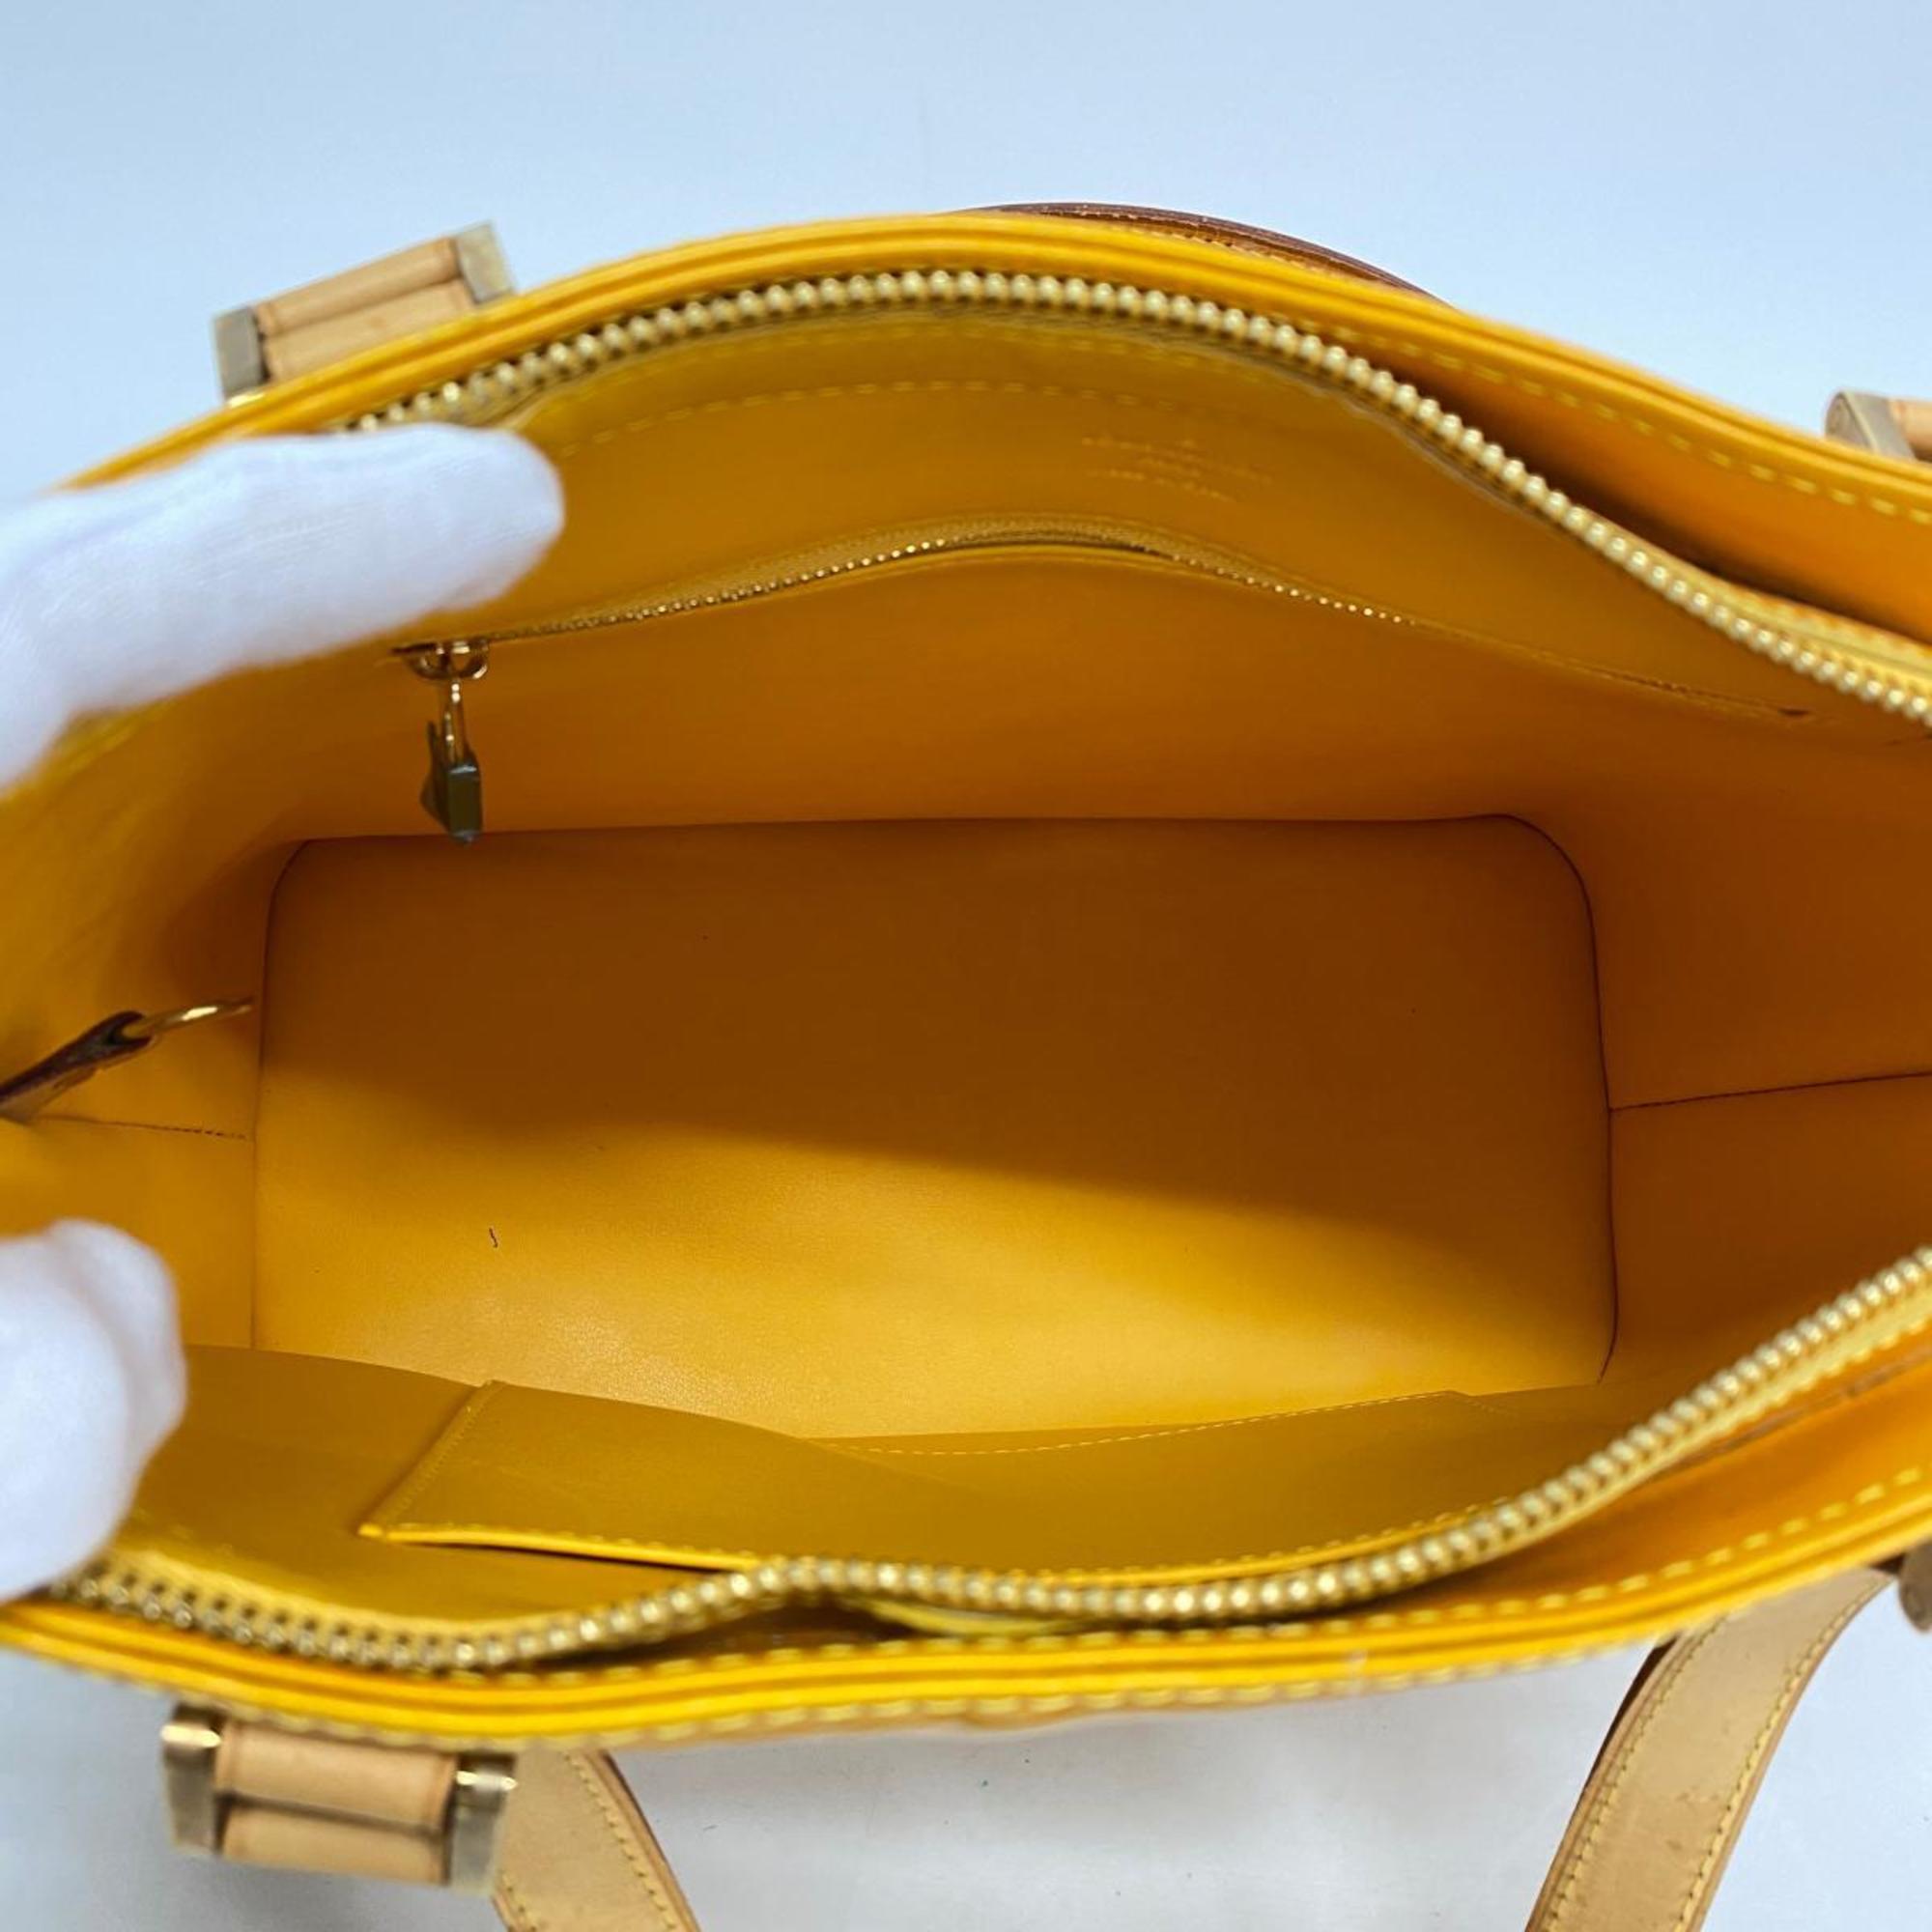 Louis Vuitton Tote Bag Vernis Houston M91121 Jaune Ladies